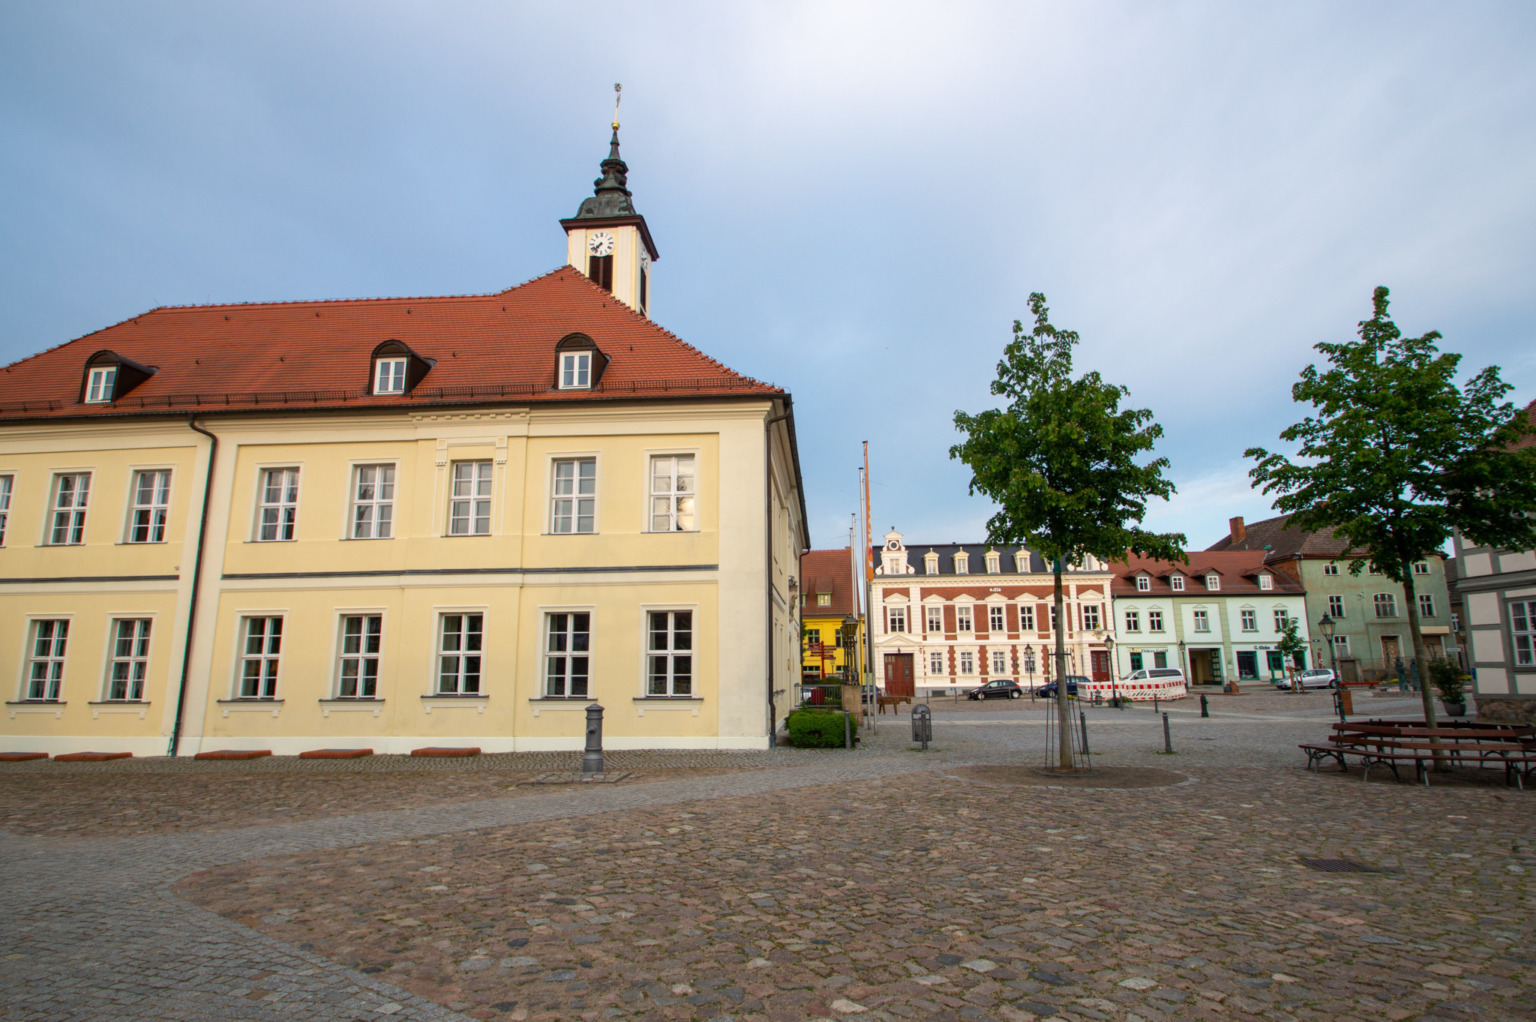 Angermünde ist eine hübsche Stadt im Barnimer Land und gehört zu den besten Reisezielen in Ostdeutschland